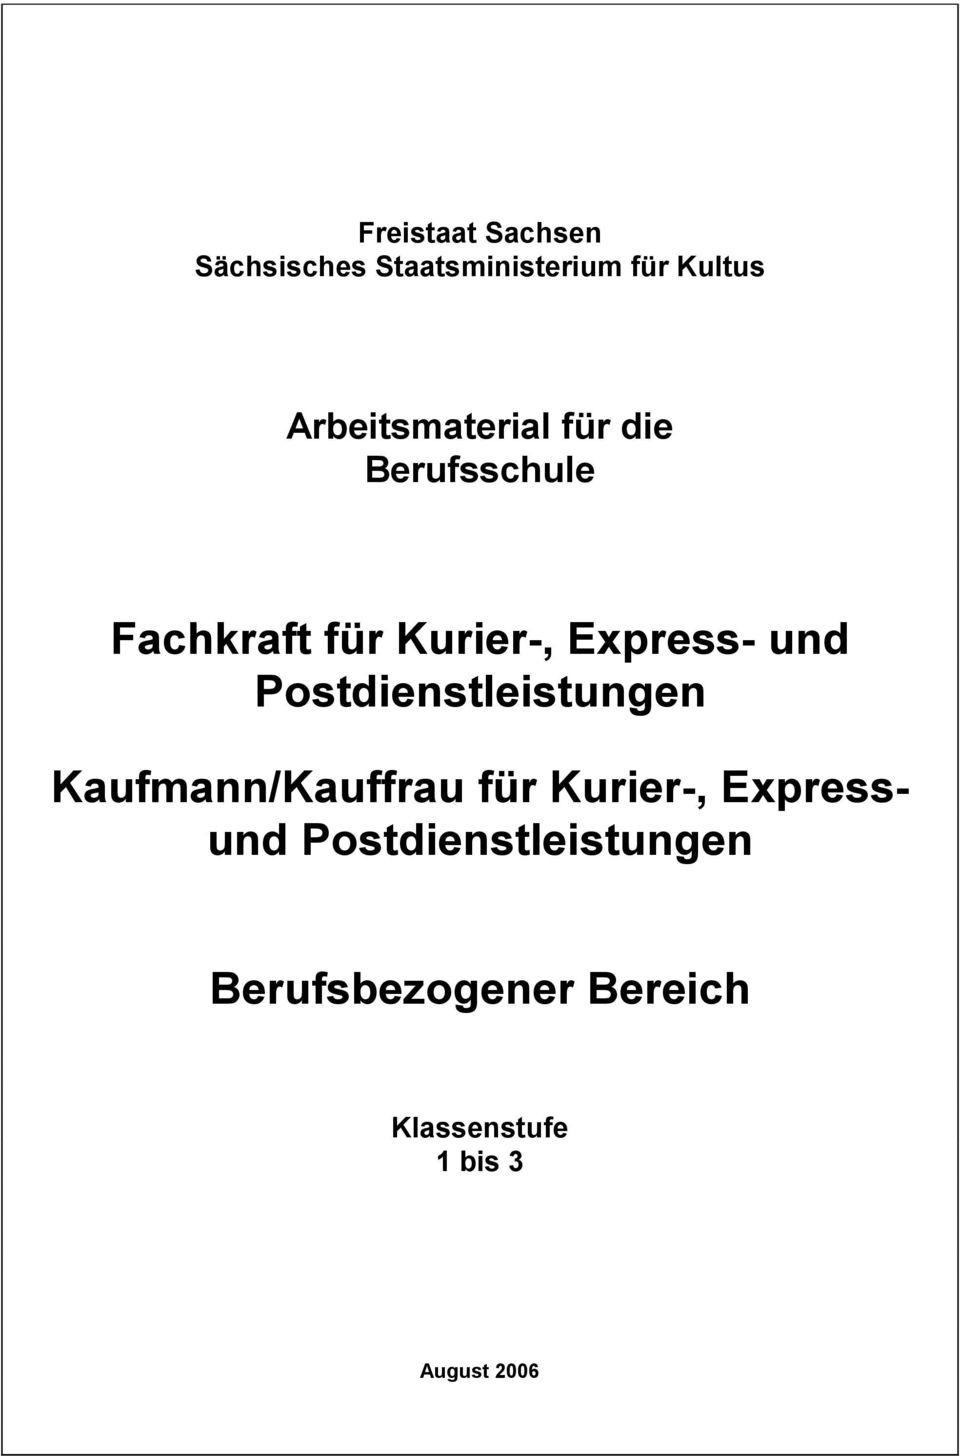 Express- und Postdienstleistungen Kaufmann/Kauffrau für Kurier-,